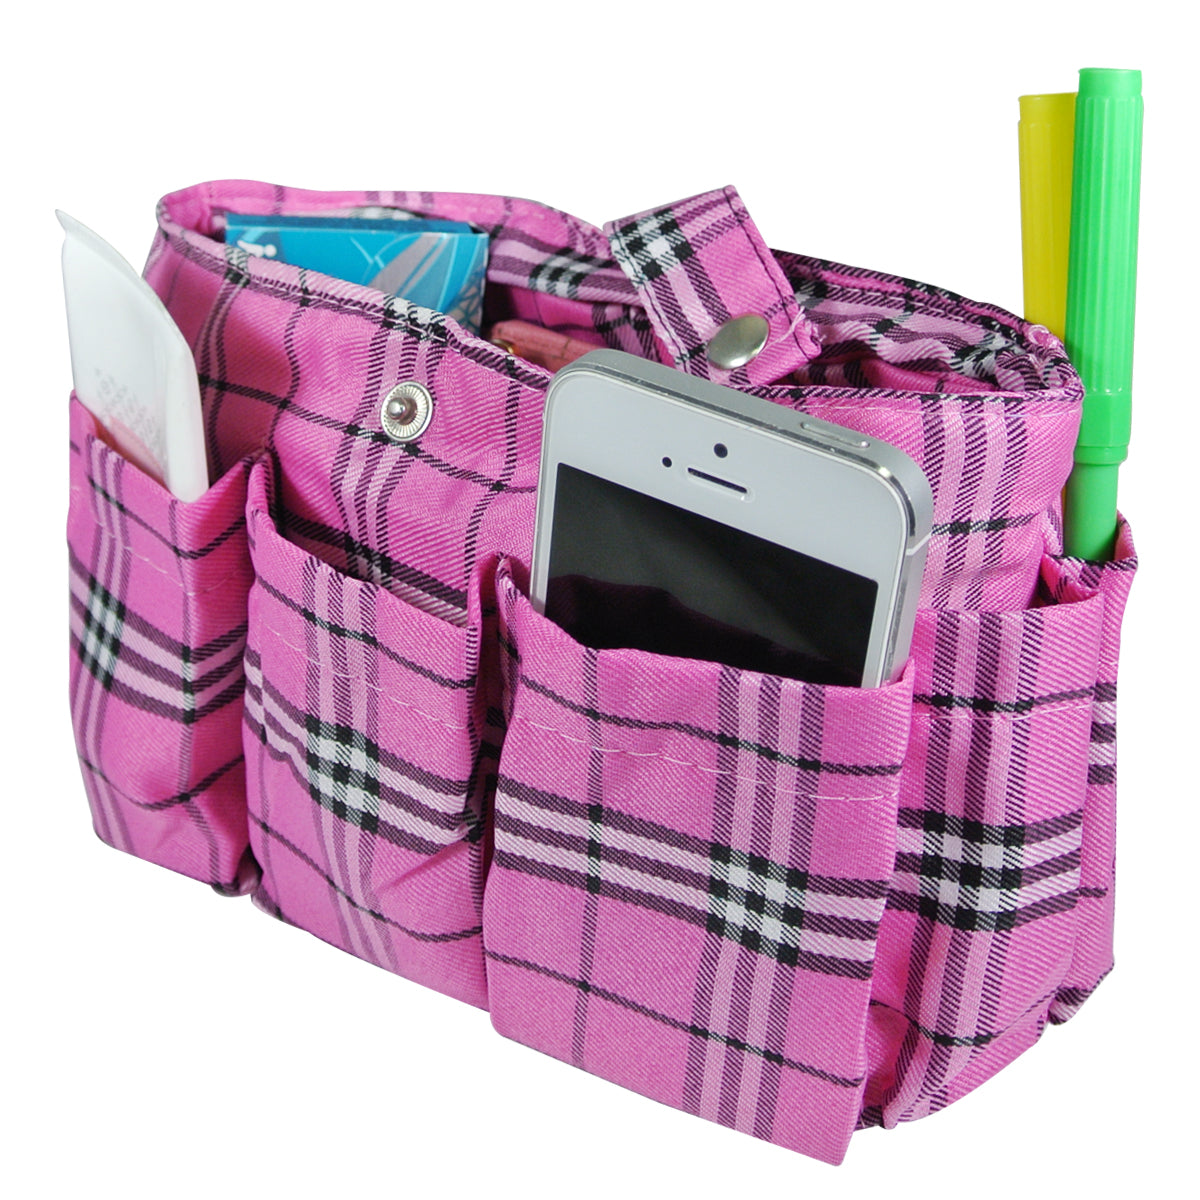 Wrapables Plaid Print Handbag Organizer, Pink